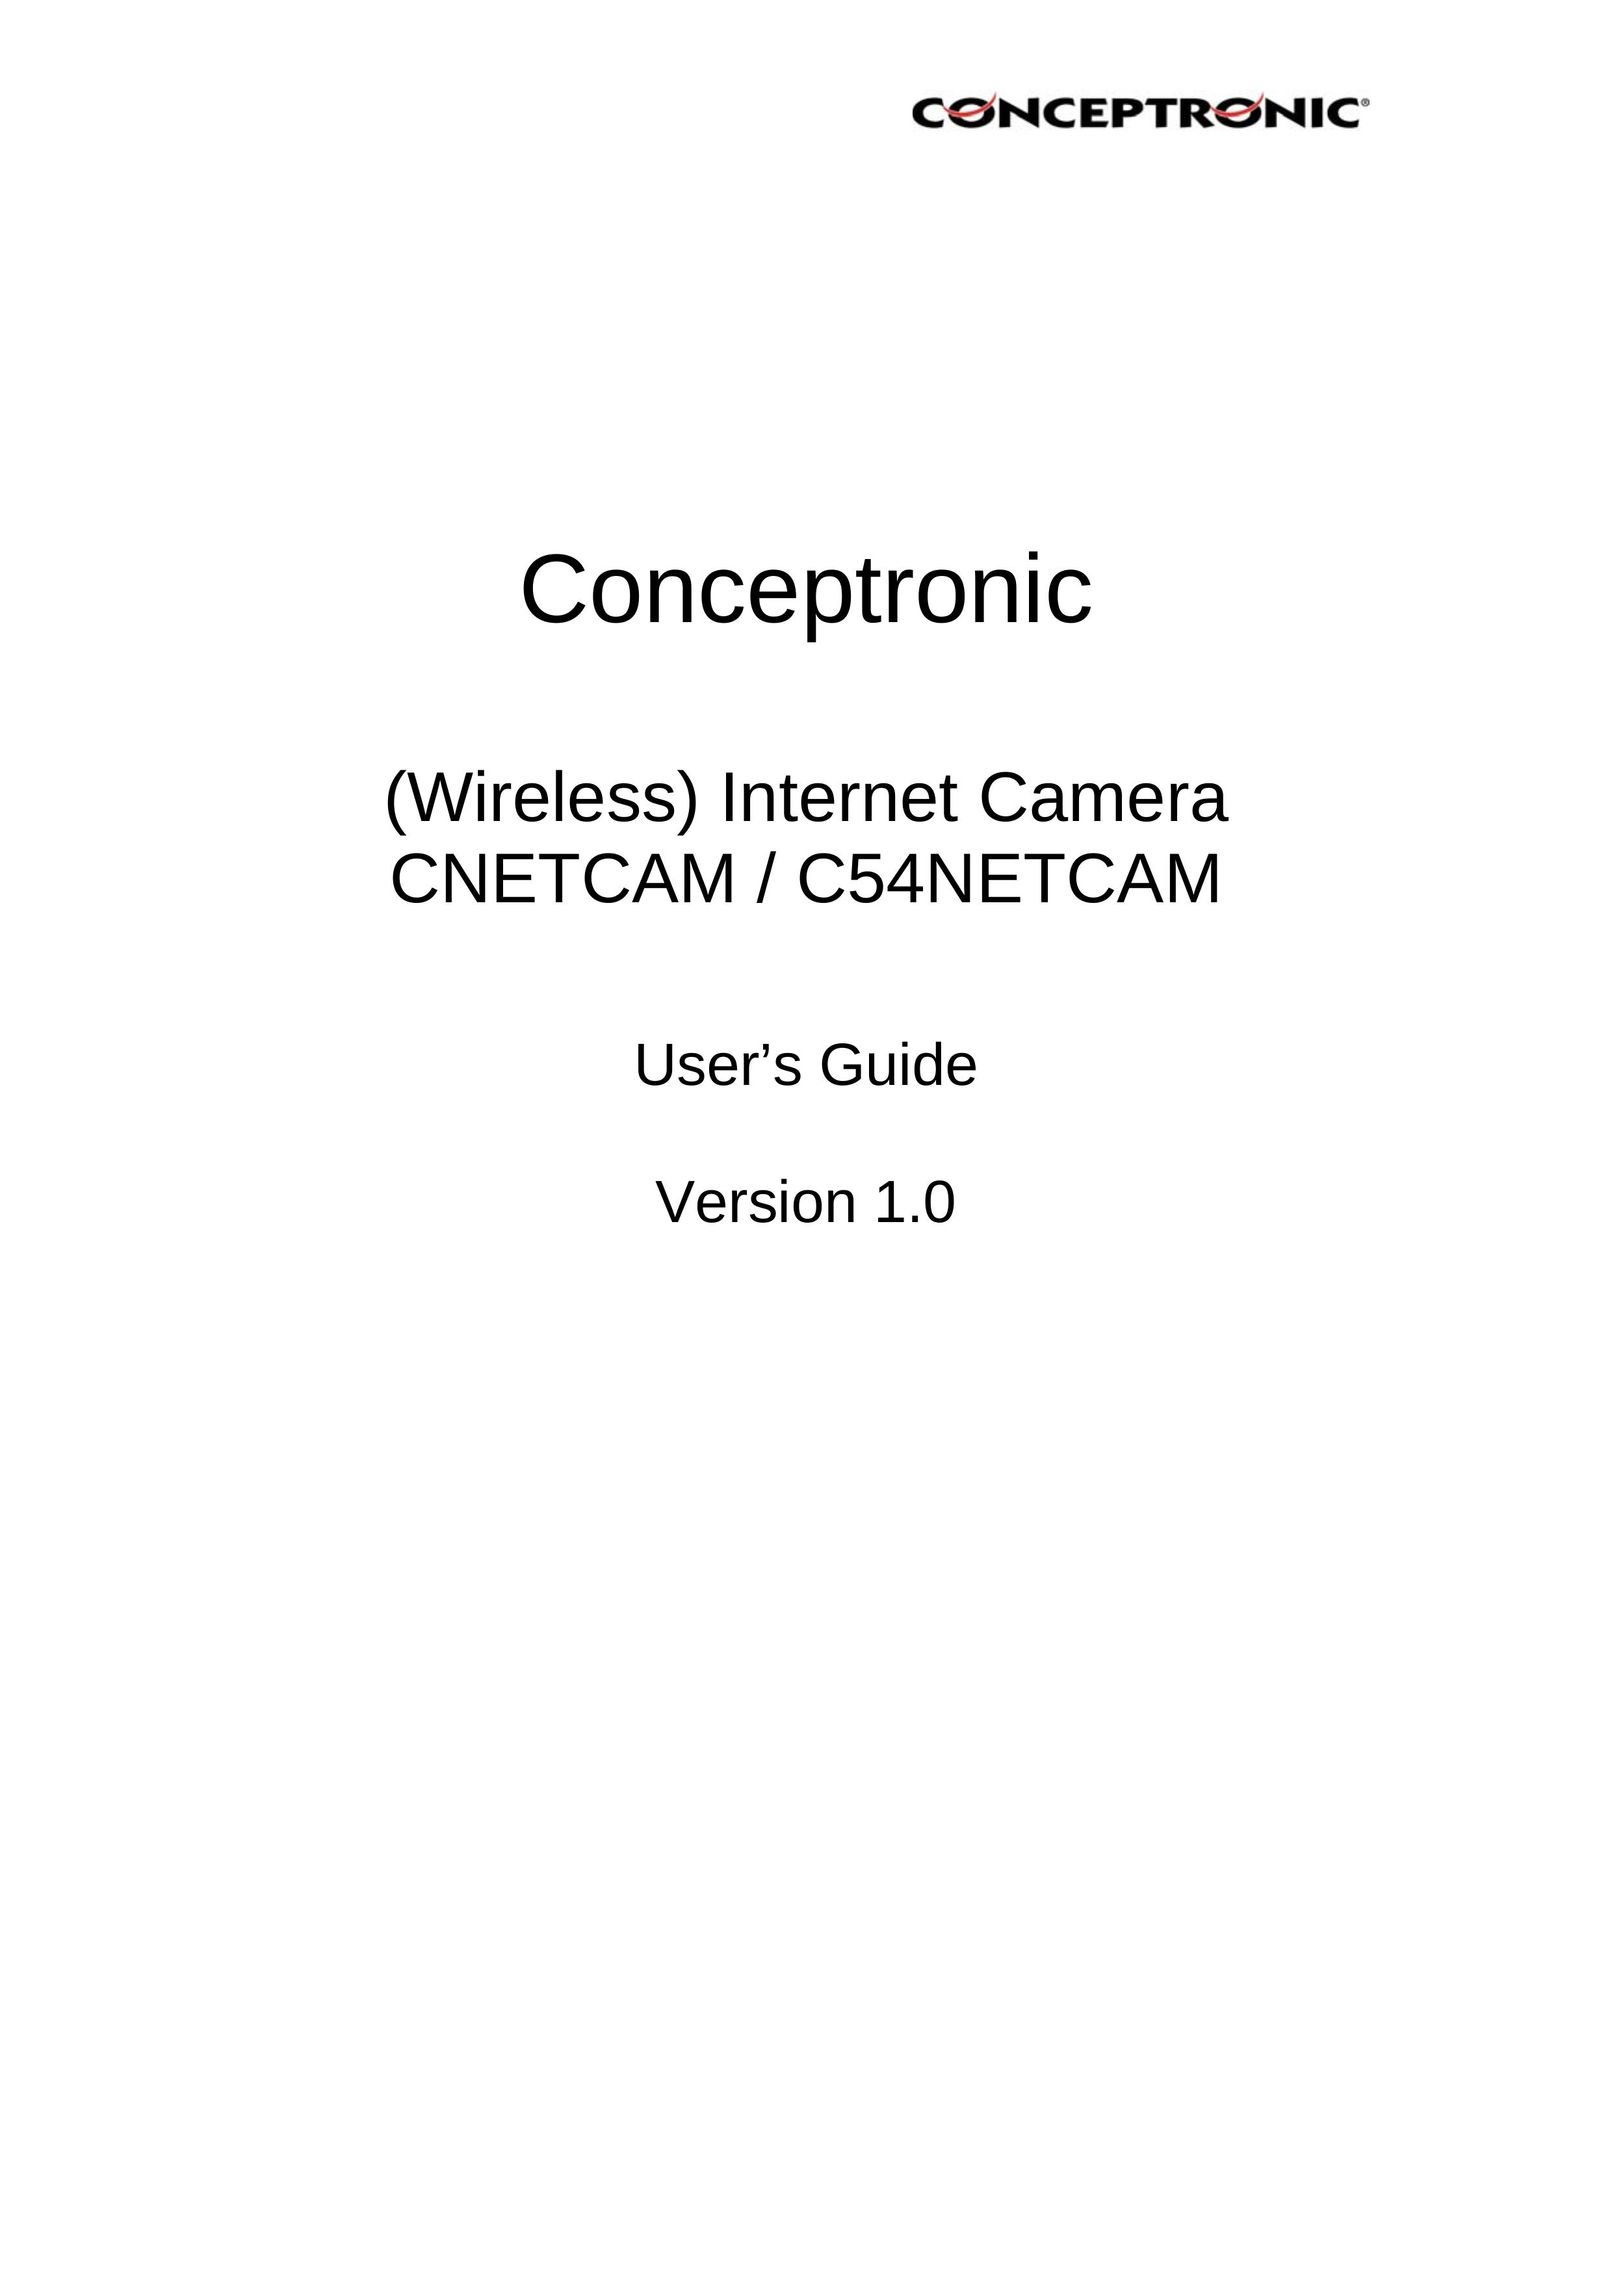 Conceptronic CNETCAM Webcam User Manual